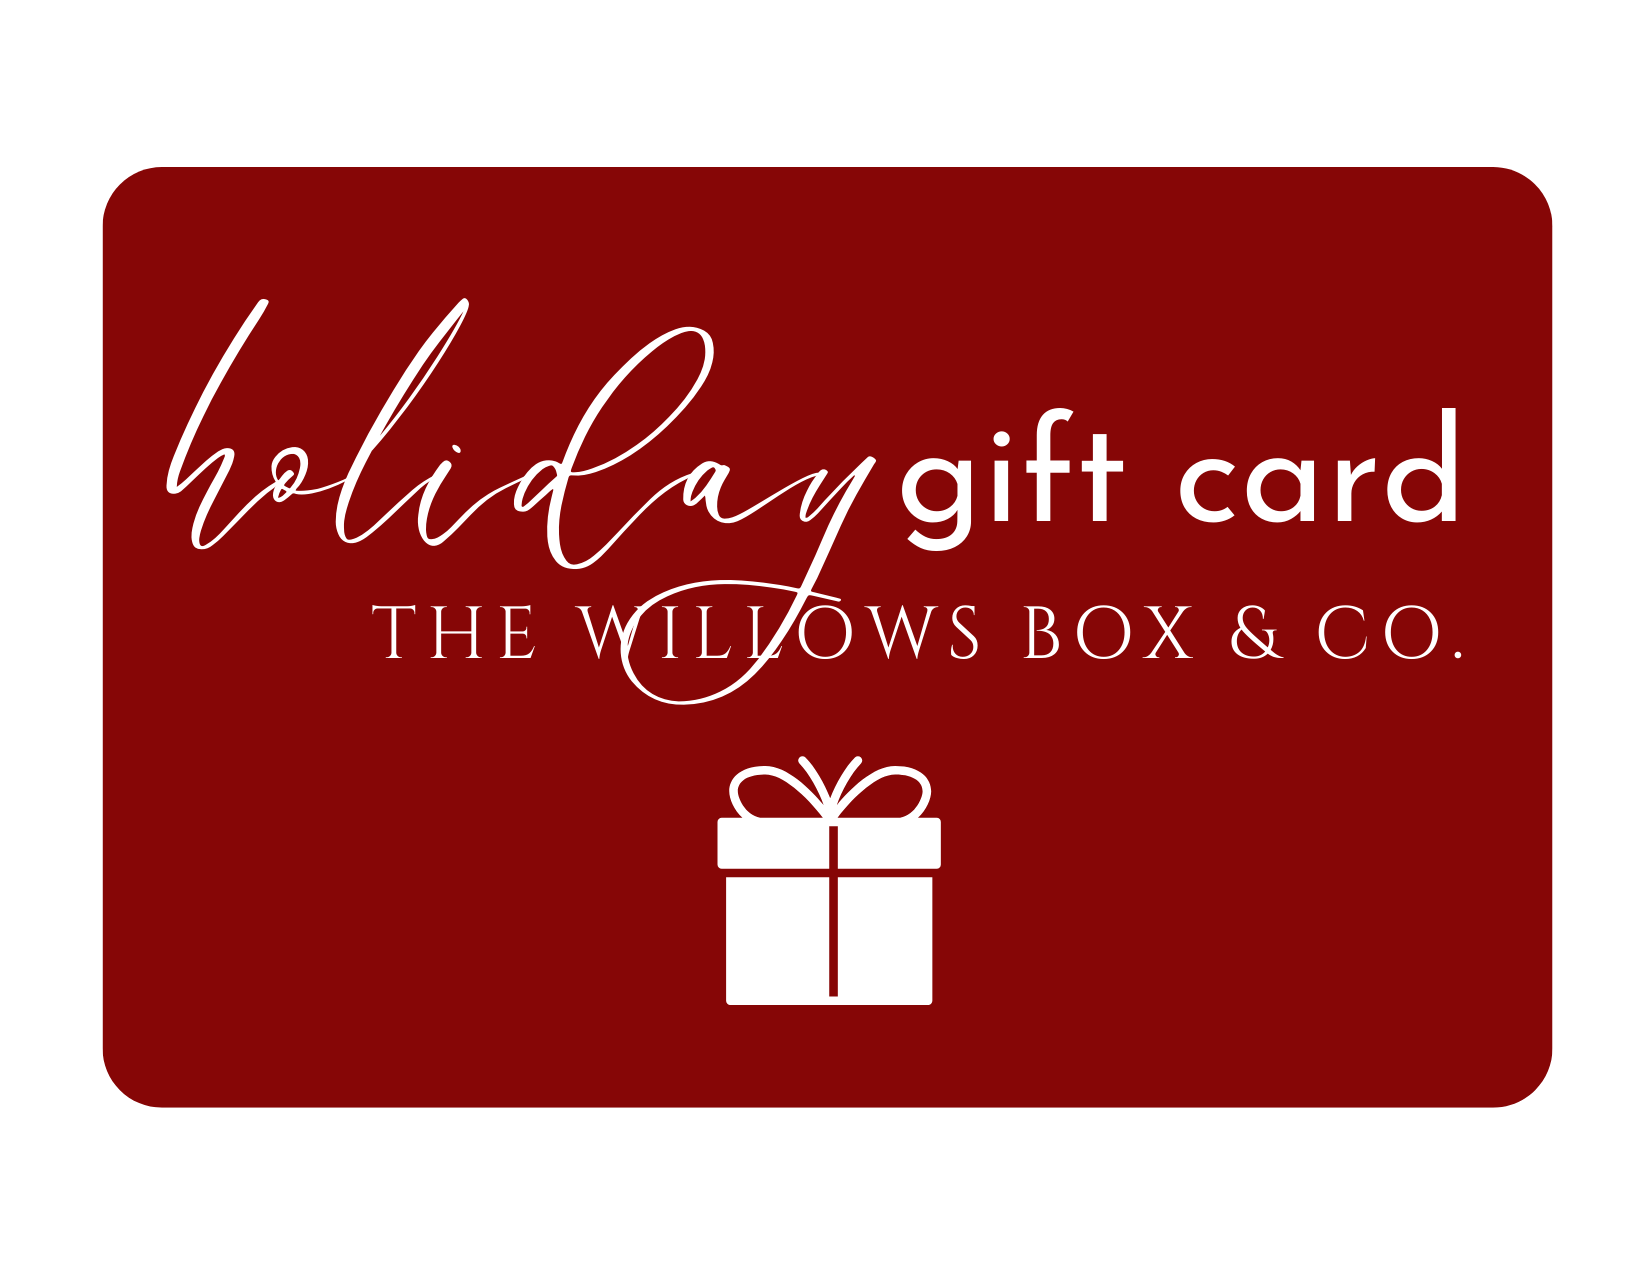 The Willows Box & Co e-gift card